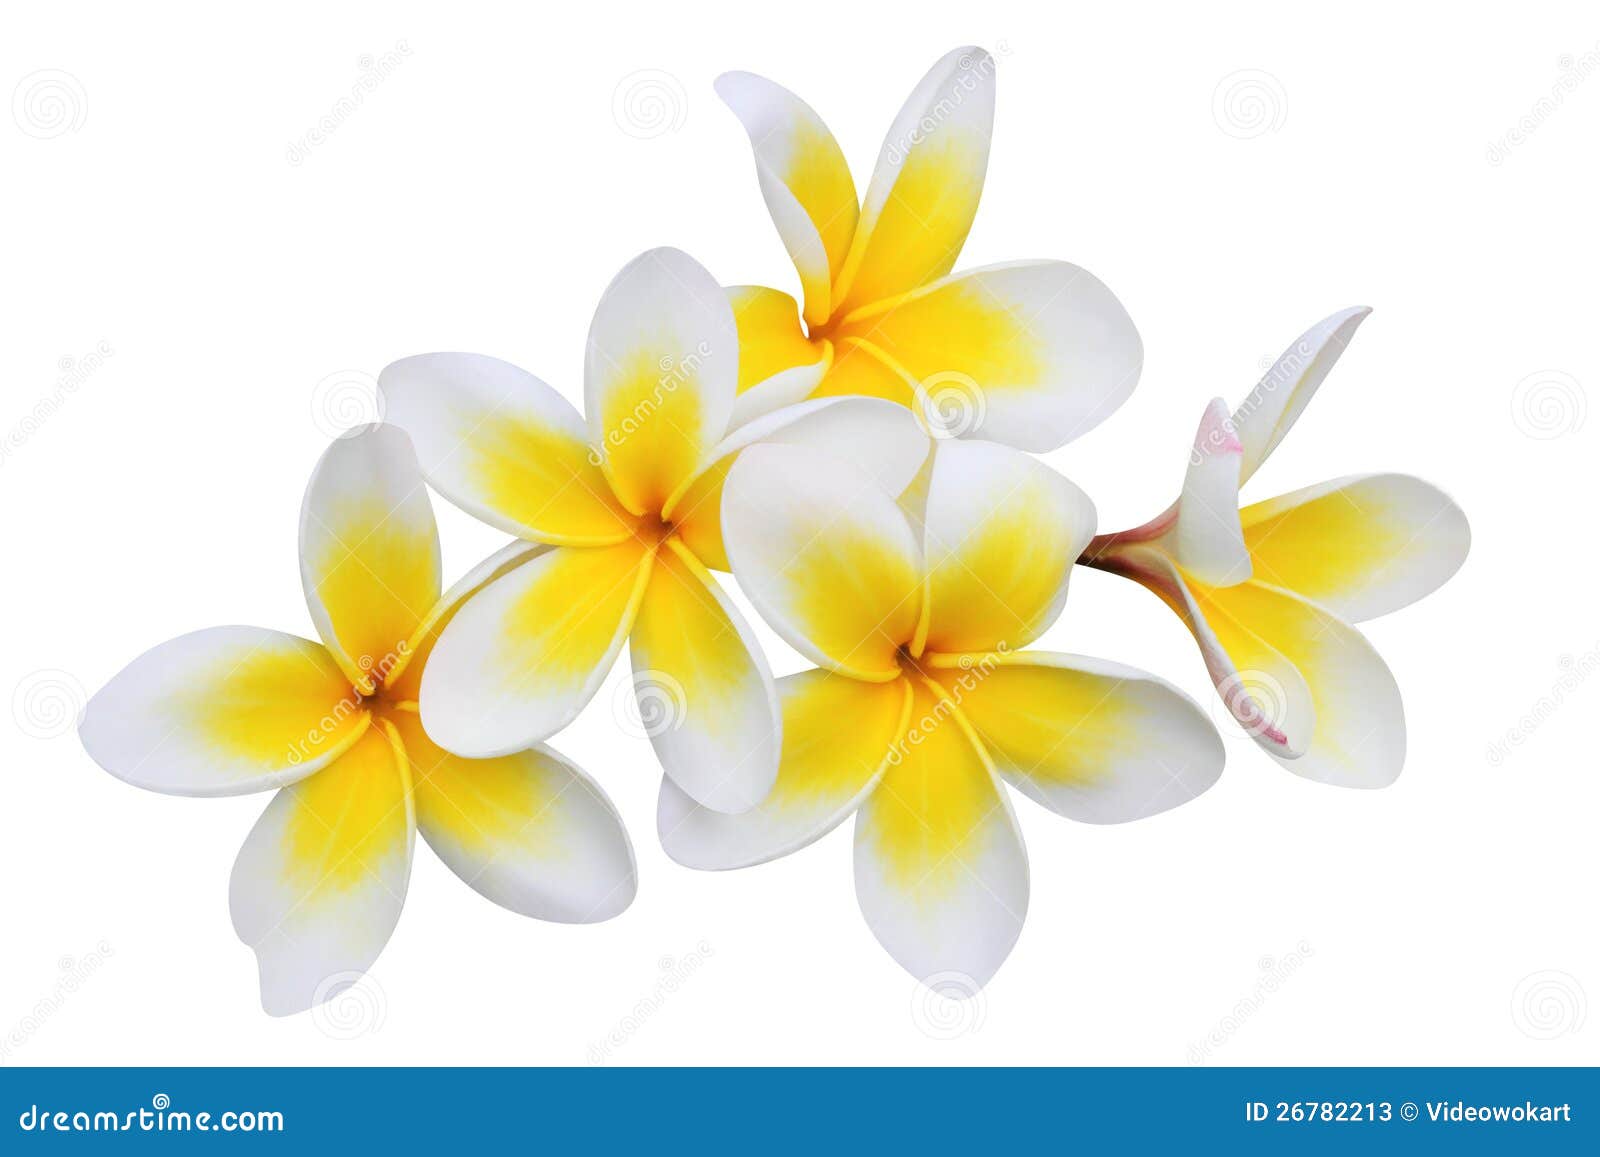 frangipani (plumeria) flowers  on white